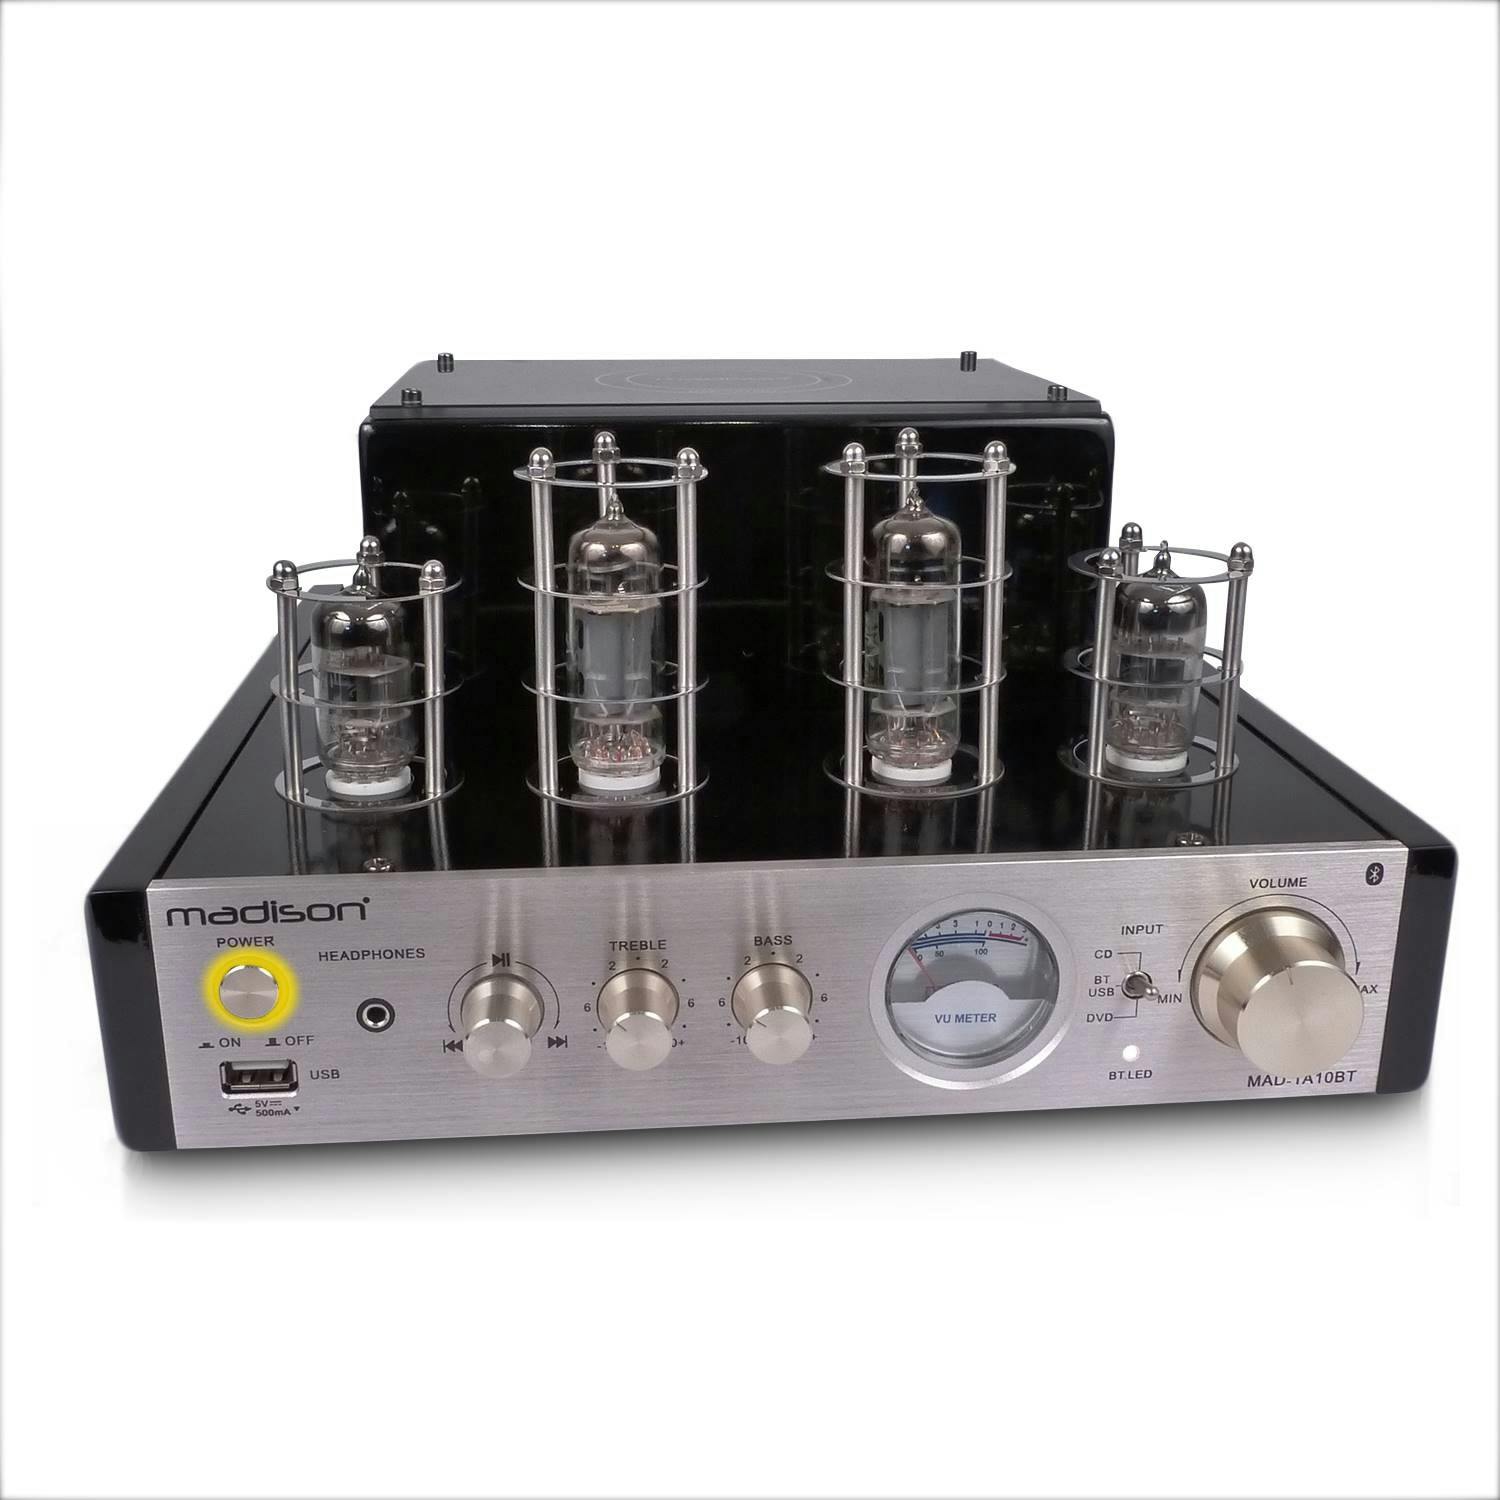 Amplificateur hi-fi Madison Amplificateur HIFI Stéréo MAD1000 100W  BLUETOOTH/NFC/CD/AUX/MP3